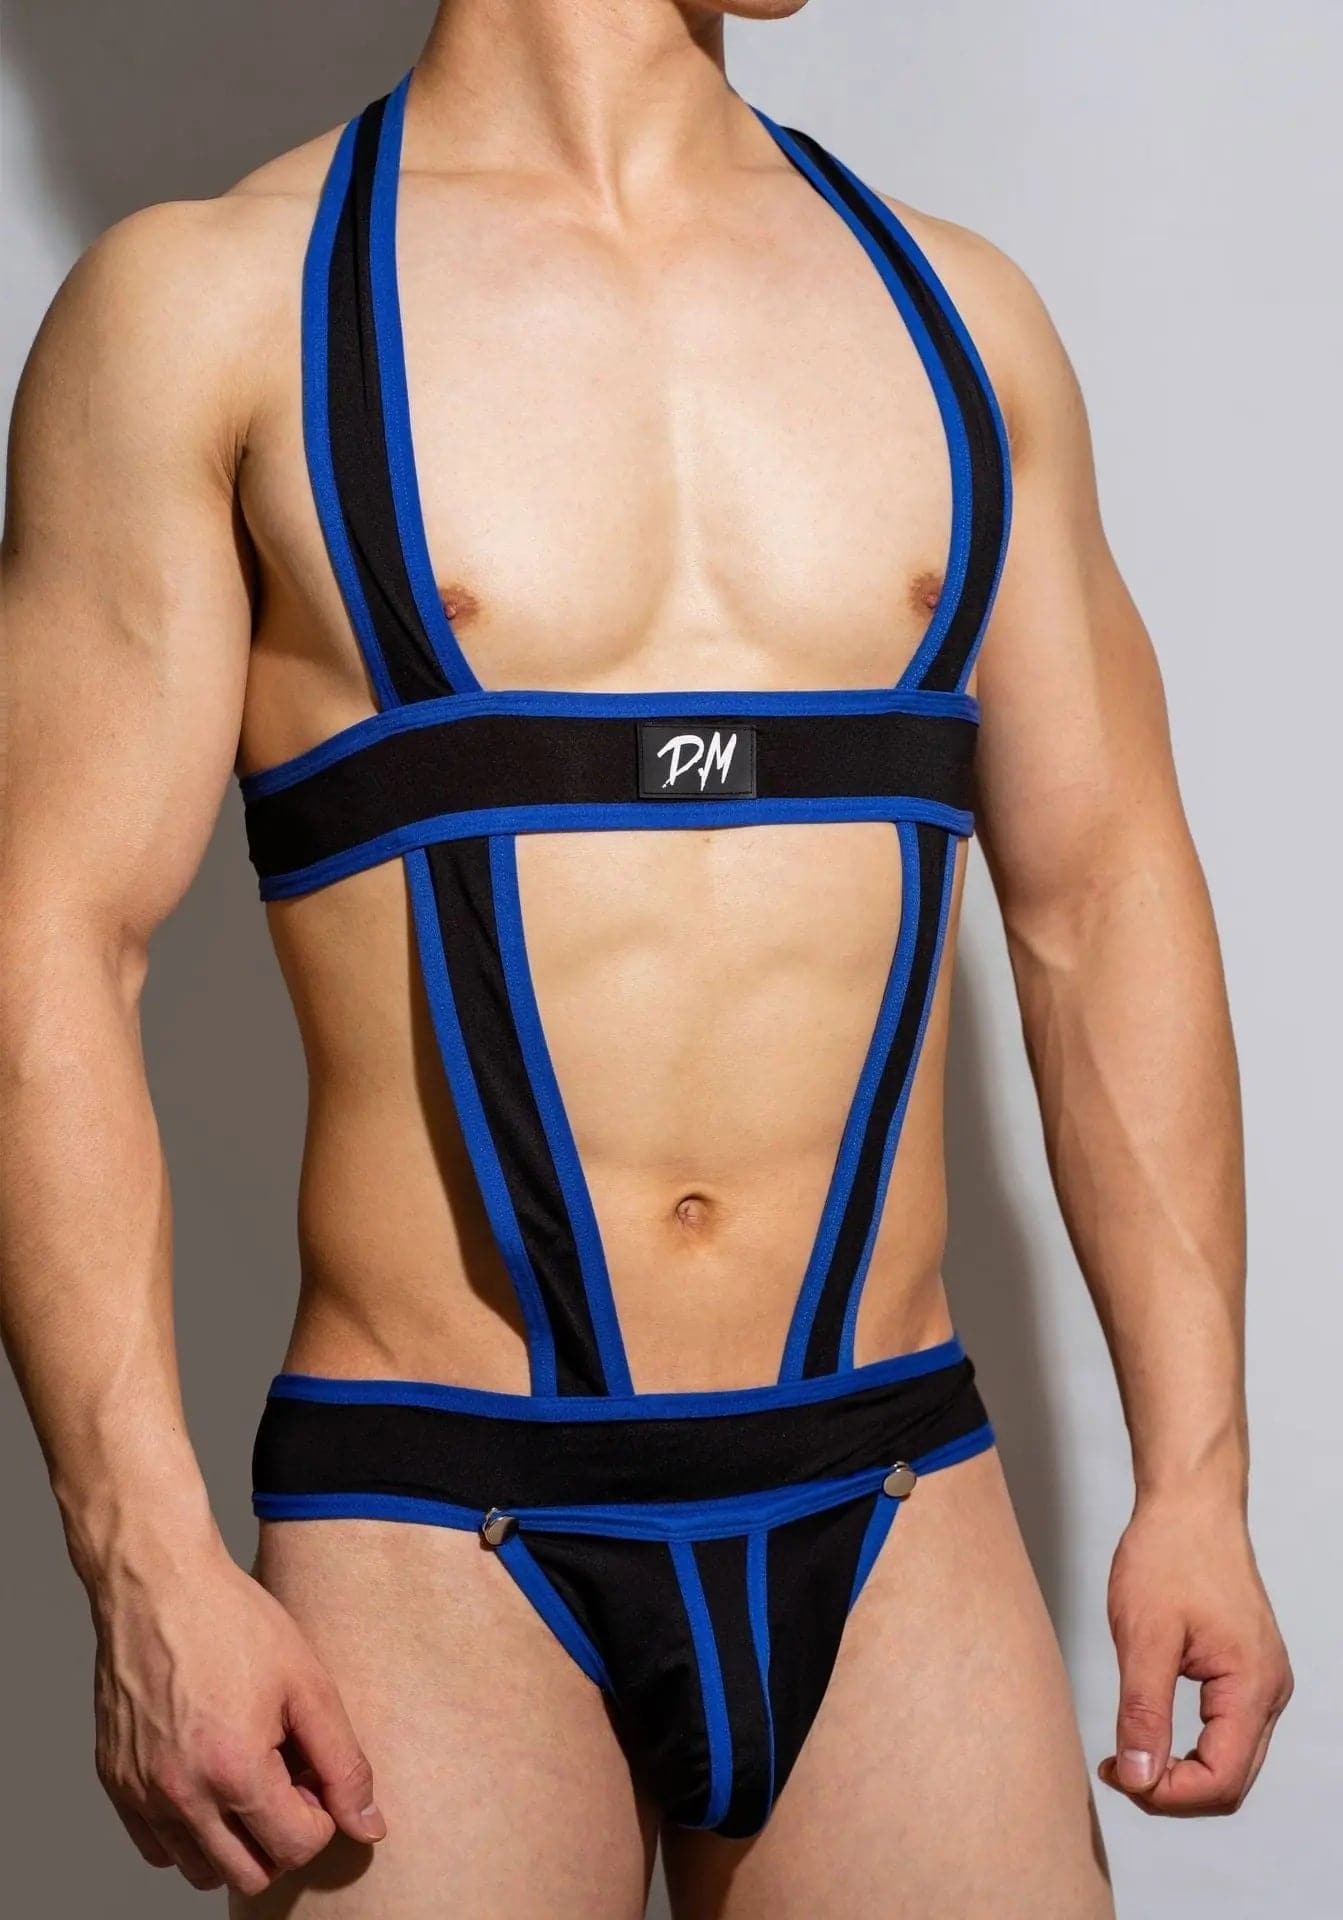 D.M Men's Underwear Sexy Fashion Jumpsuit Shoulder Strap D.M UNDERWEAR